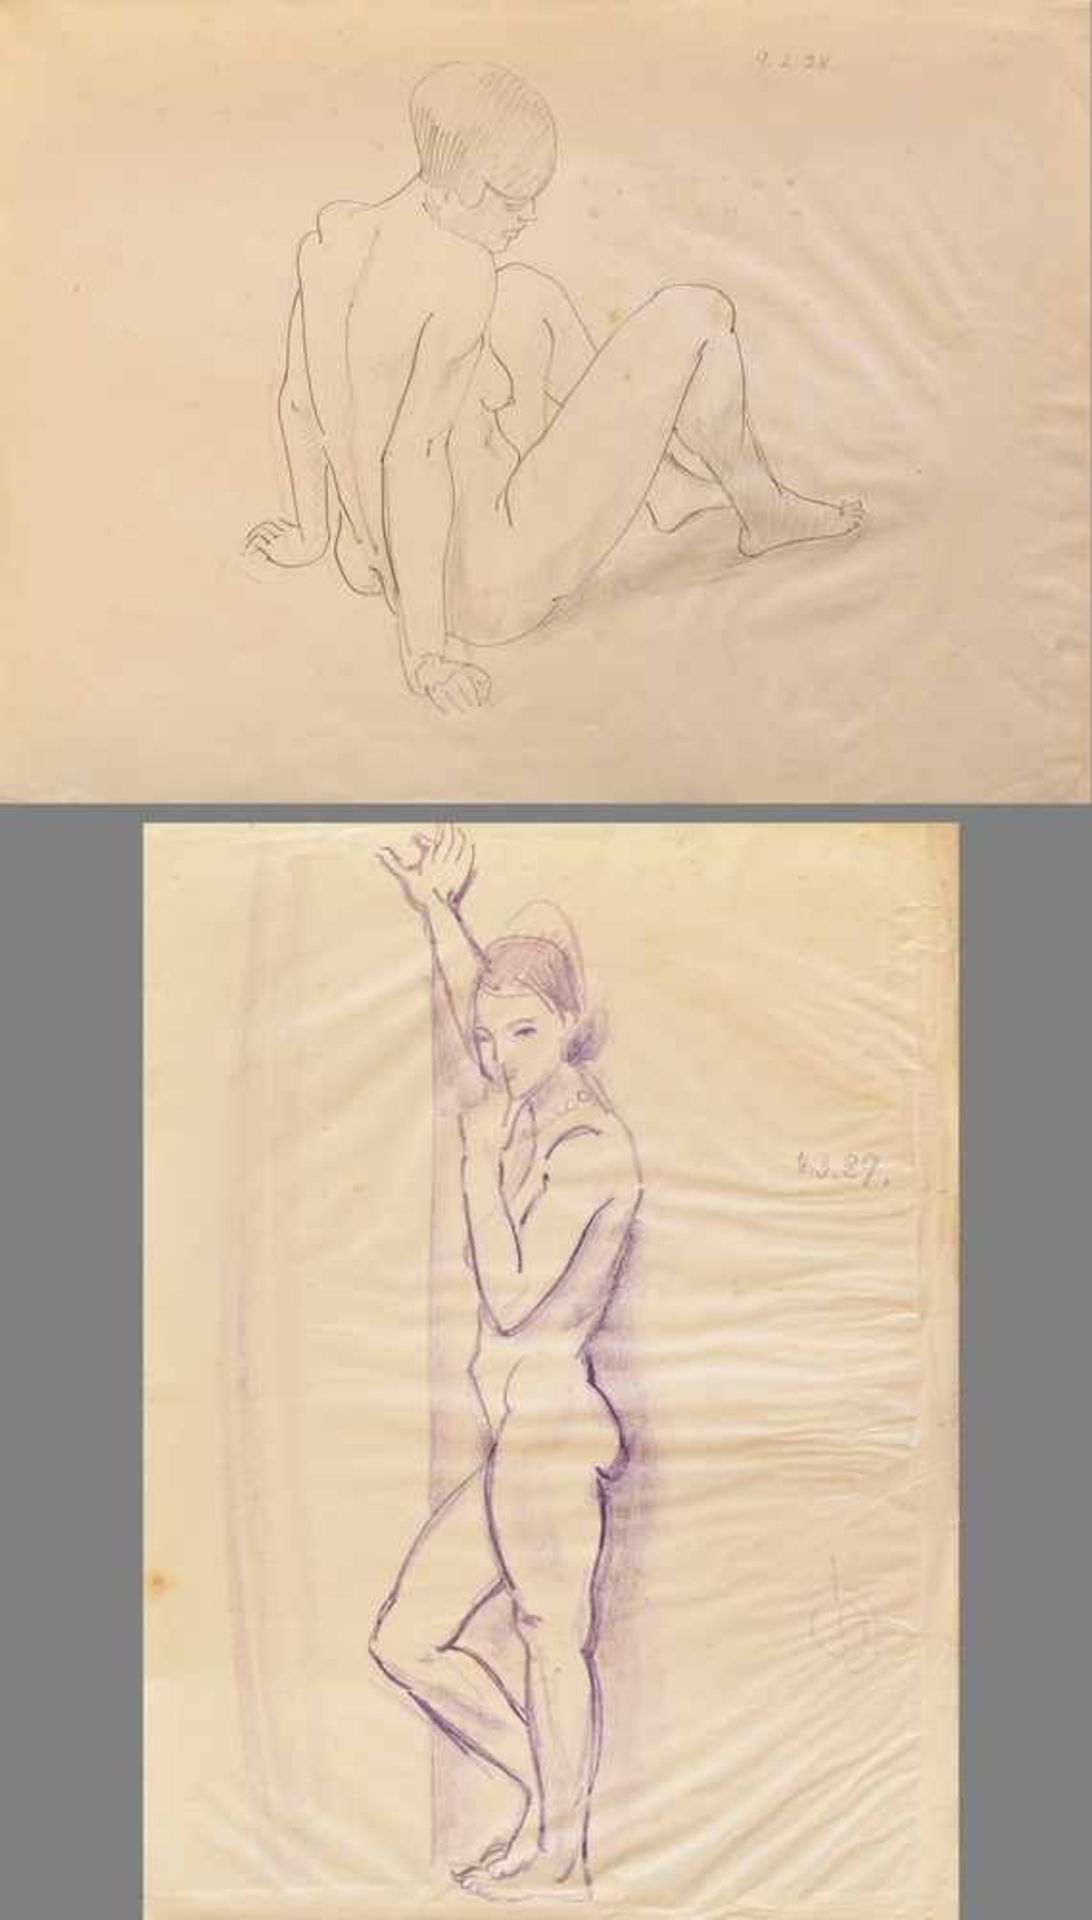 2 Diverse Scheele, Kurt (1905-1944) Zeichnungen "Sitzender Akt"/"Stehender Akt" 1928/1929, Blei/